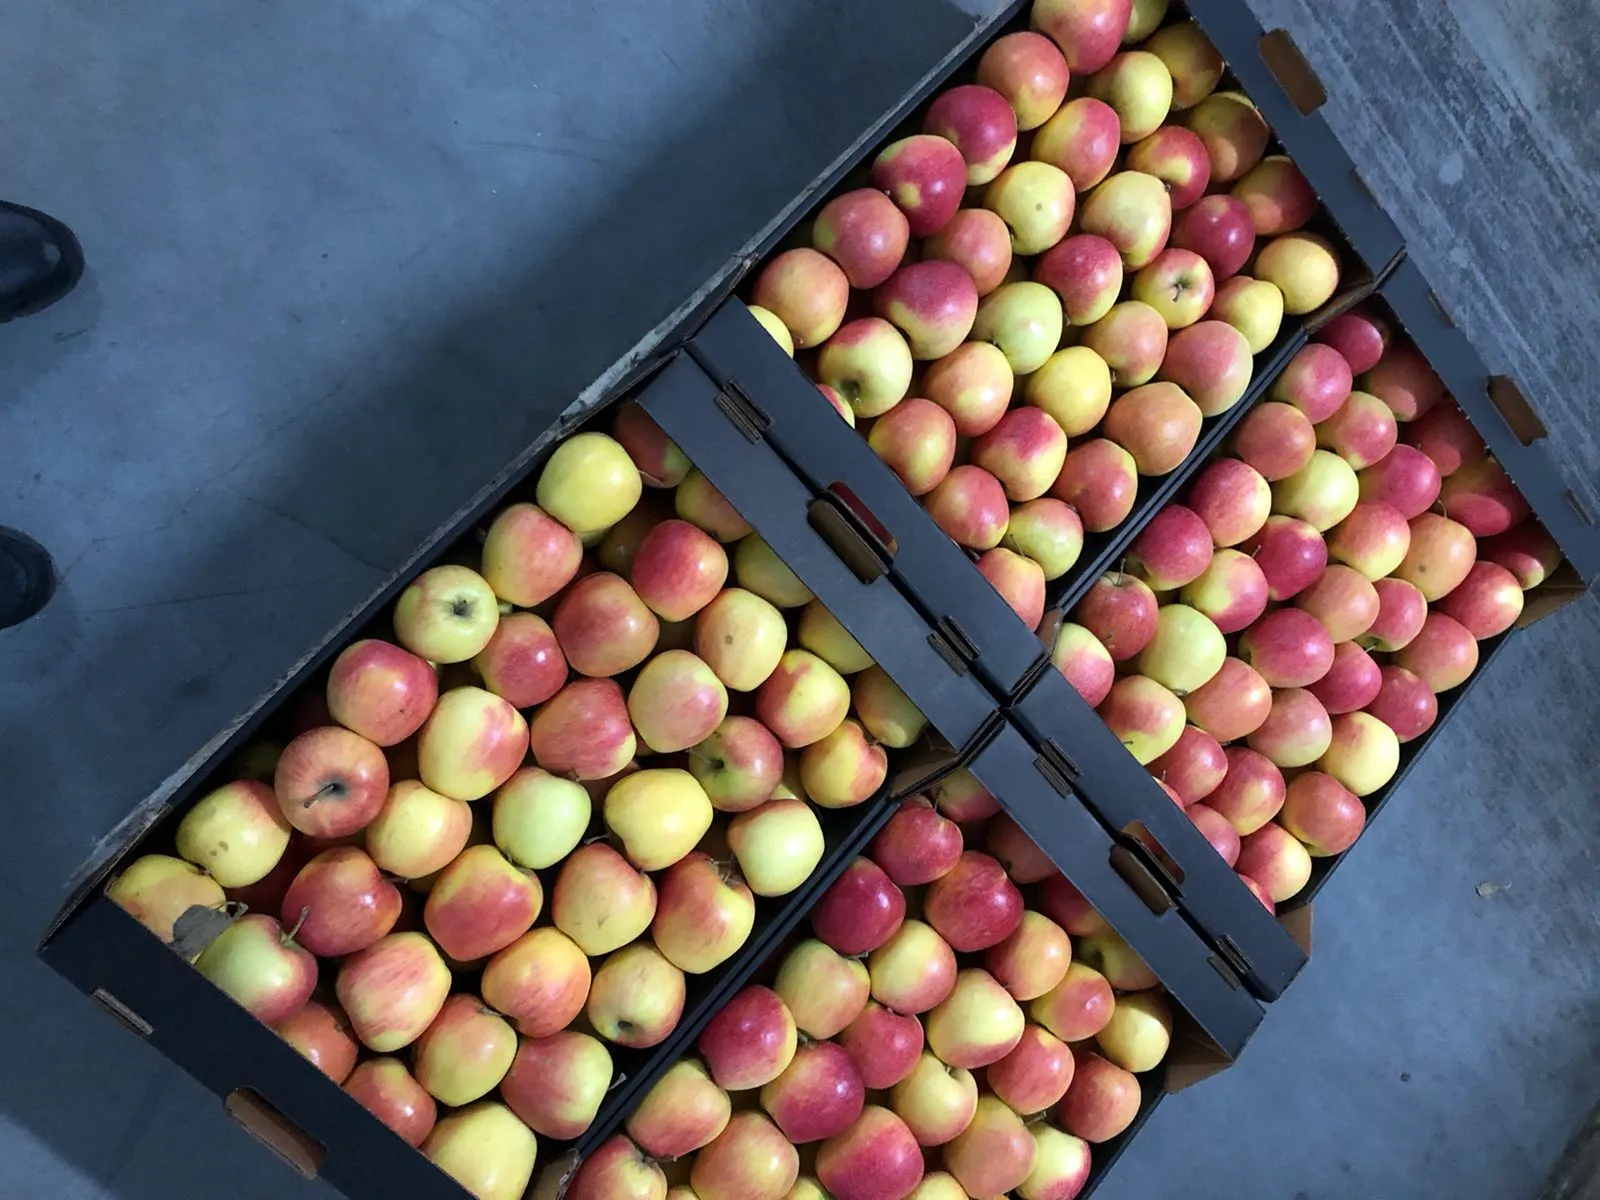 яблоки свежие  в Нальчике и Кабардино-Балкарской республике